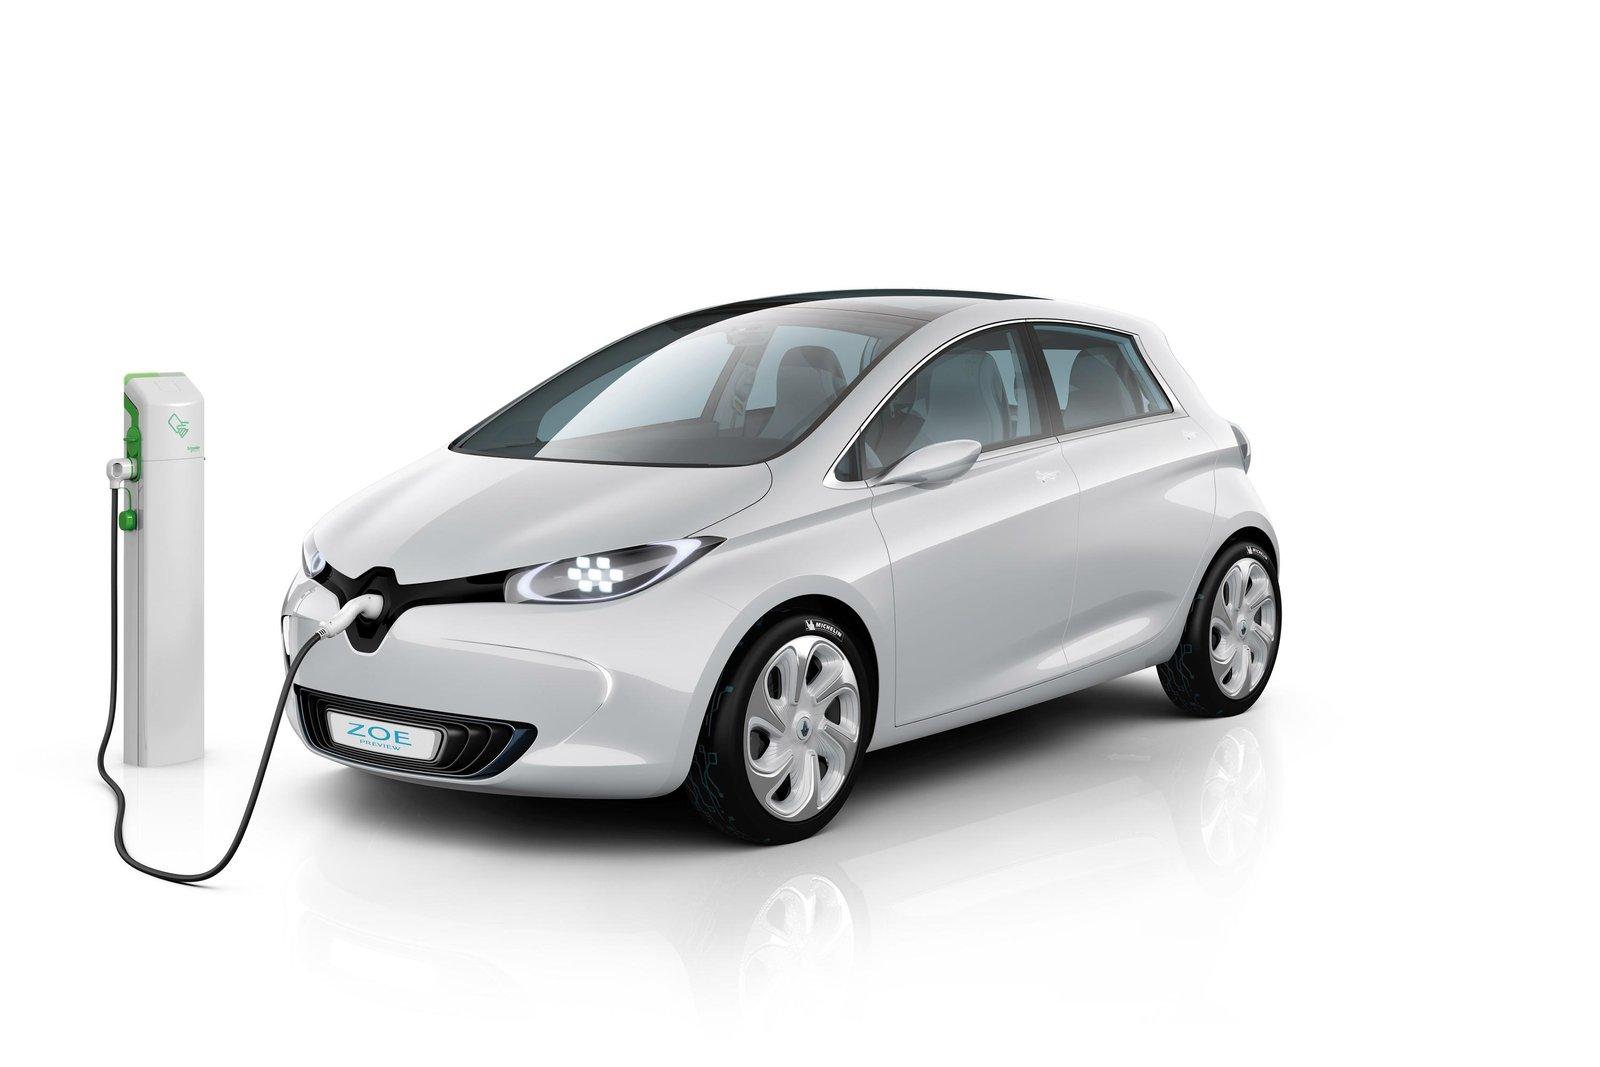 Vehícilo eléctrico: El coche eléctrico Renault Zoe es uno de los más seguros